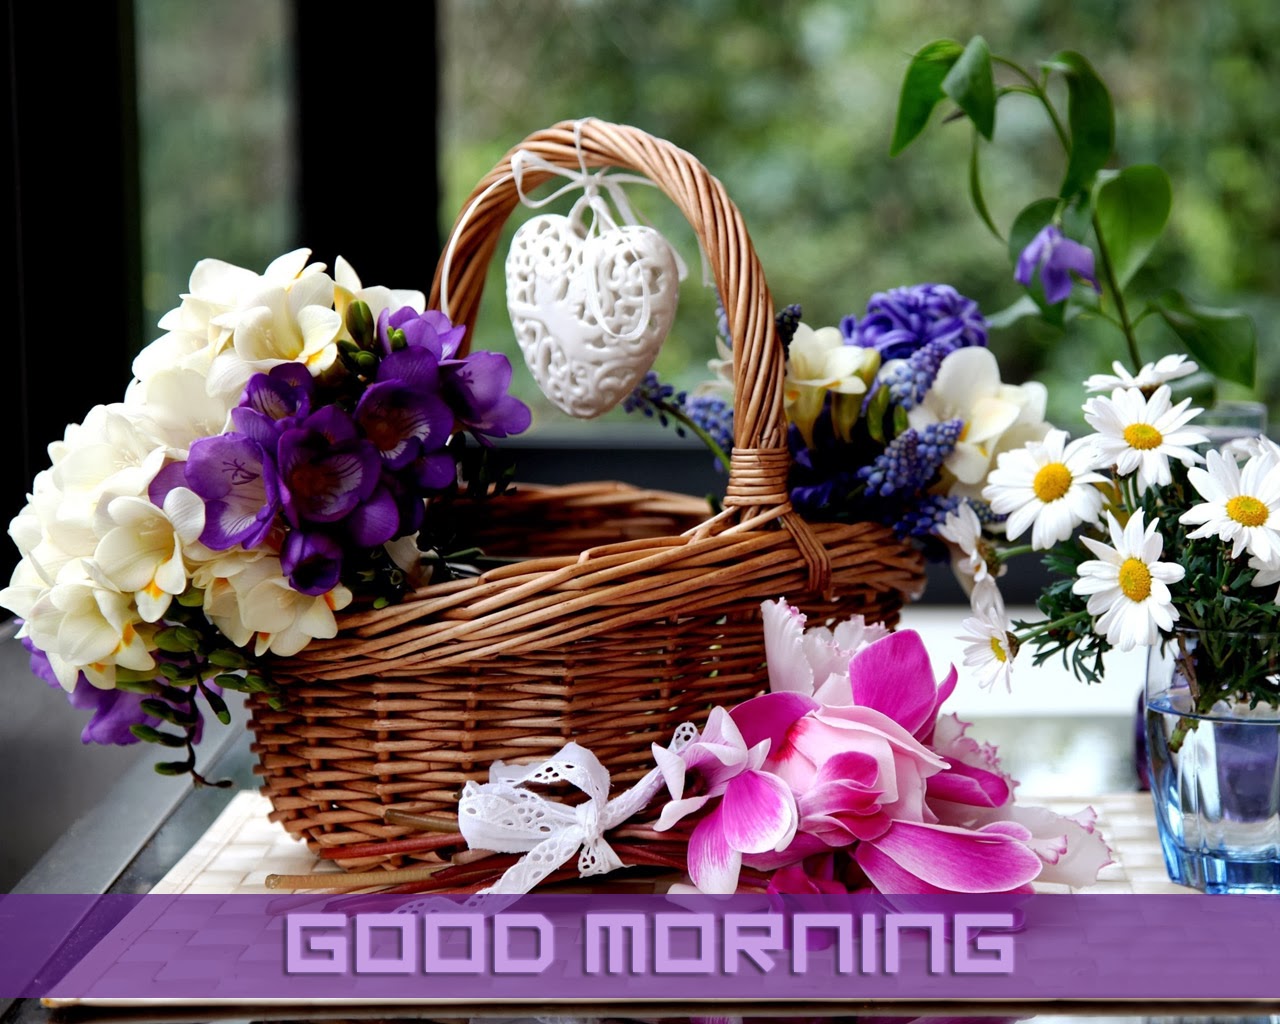 buongiorno con sfondi di fiori,fiore,cesto di fiori ragazza,cestino da picnic,cesto regalo,viola